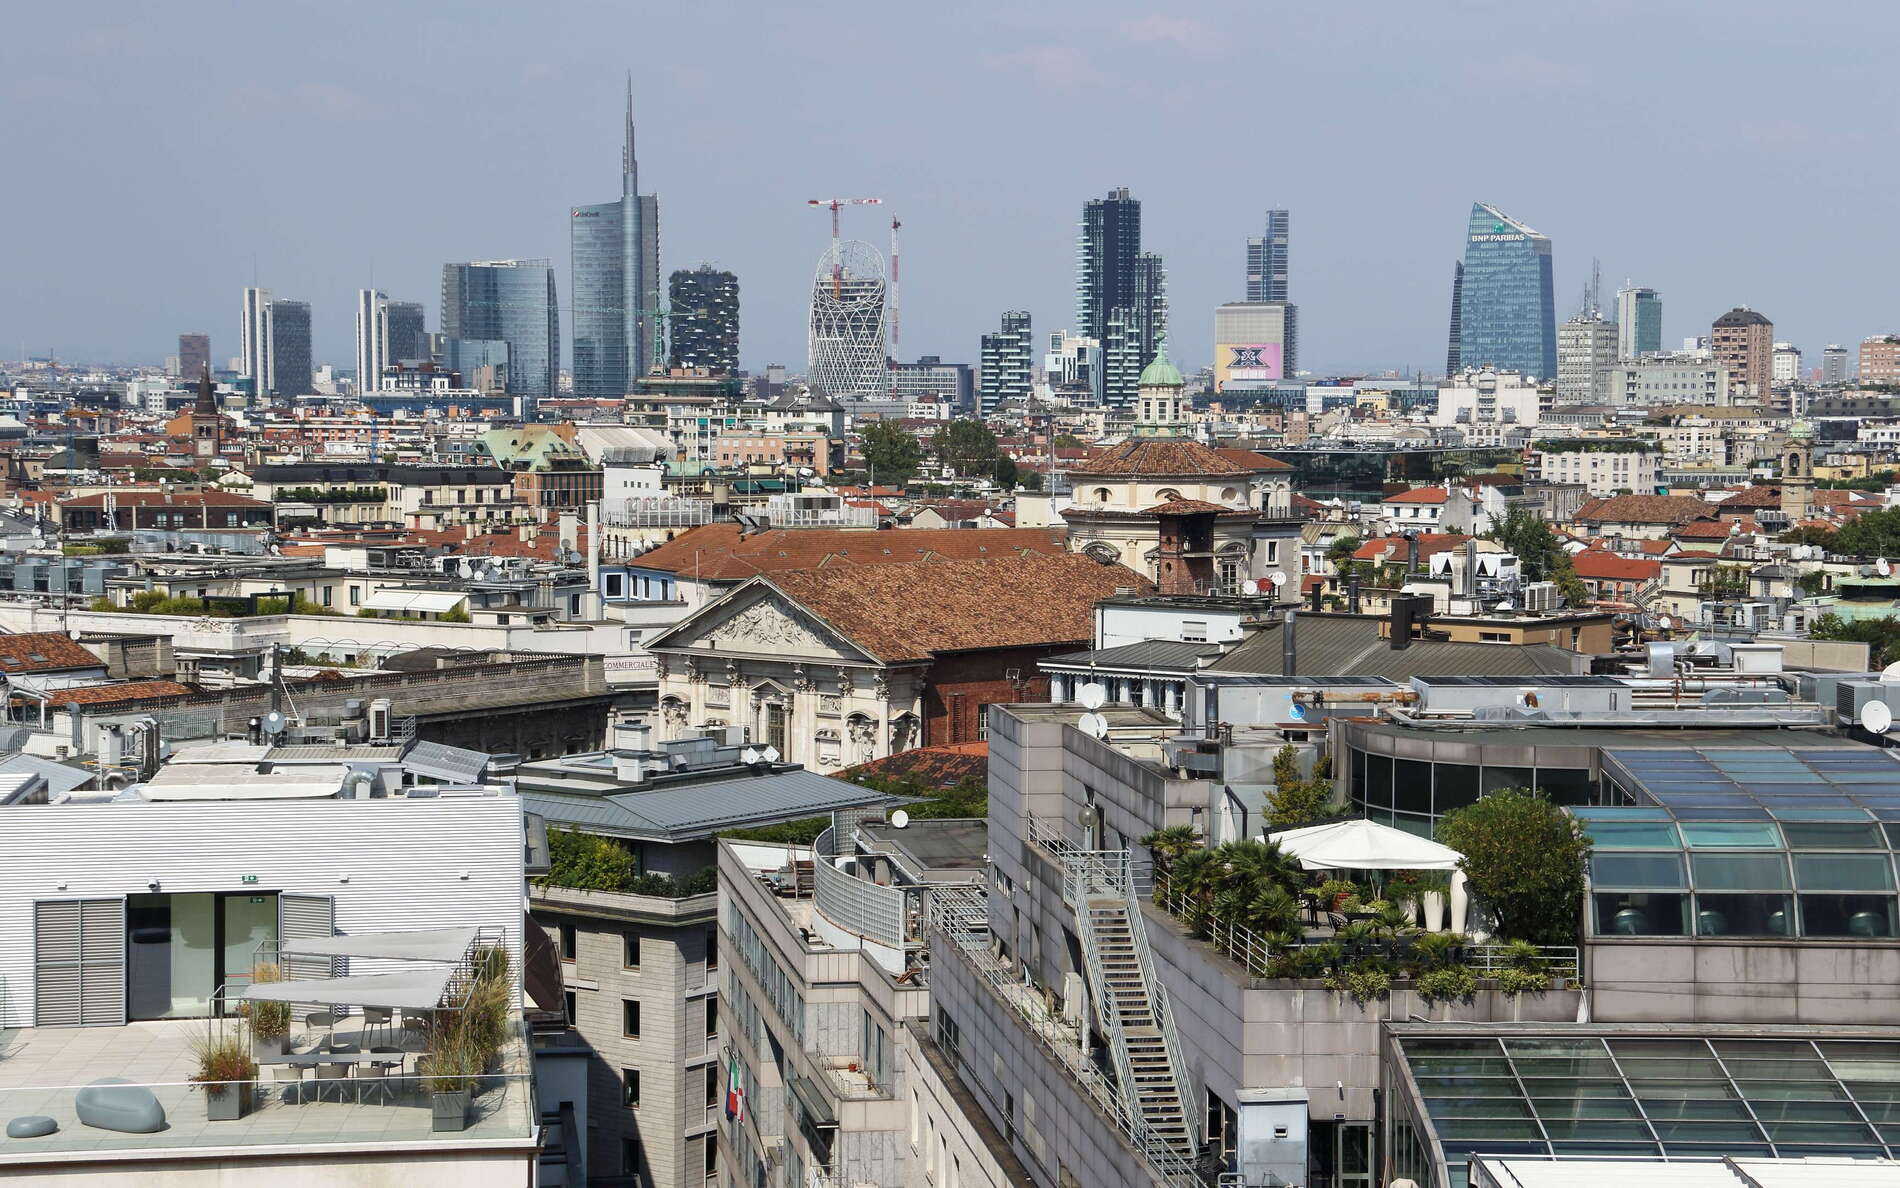 Milano | Roofscape and Centro Direzionale